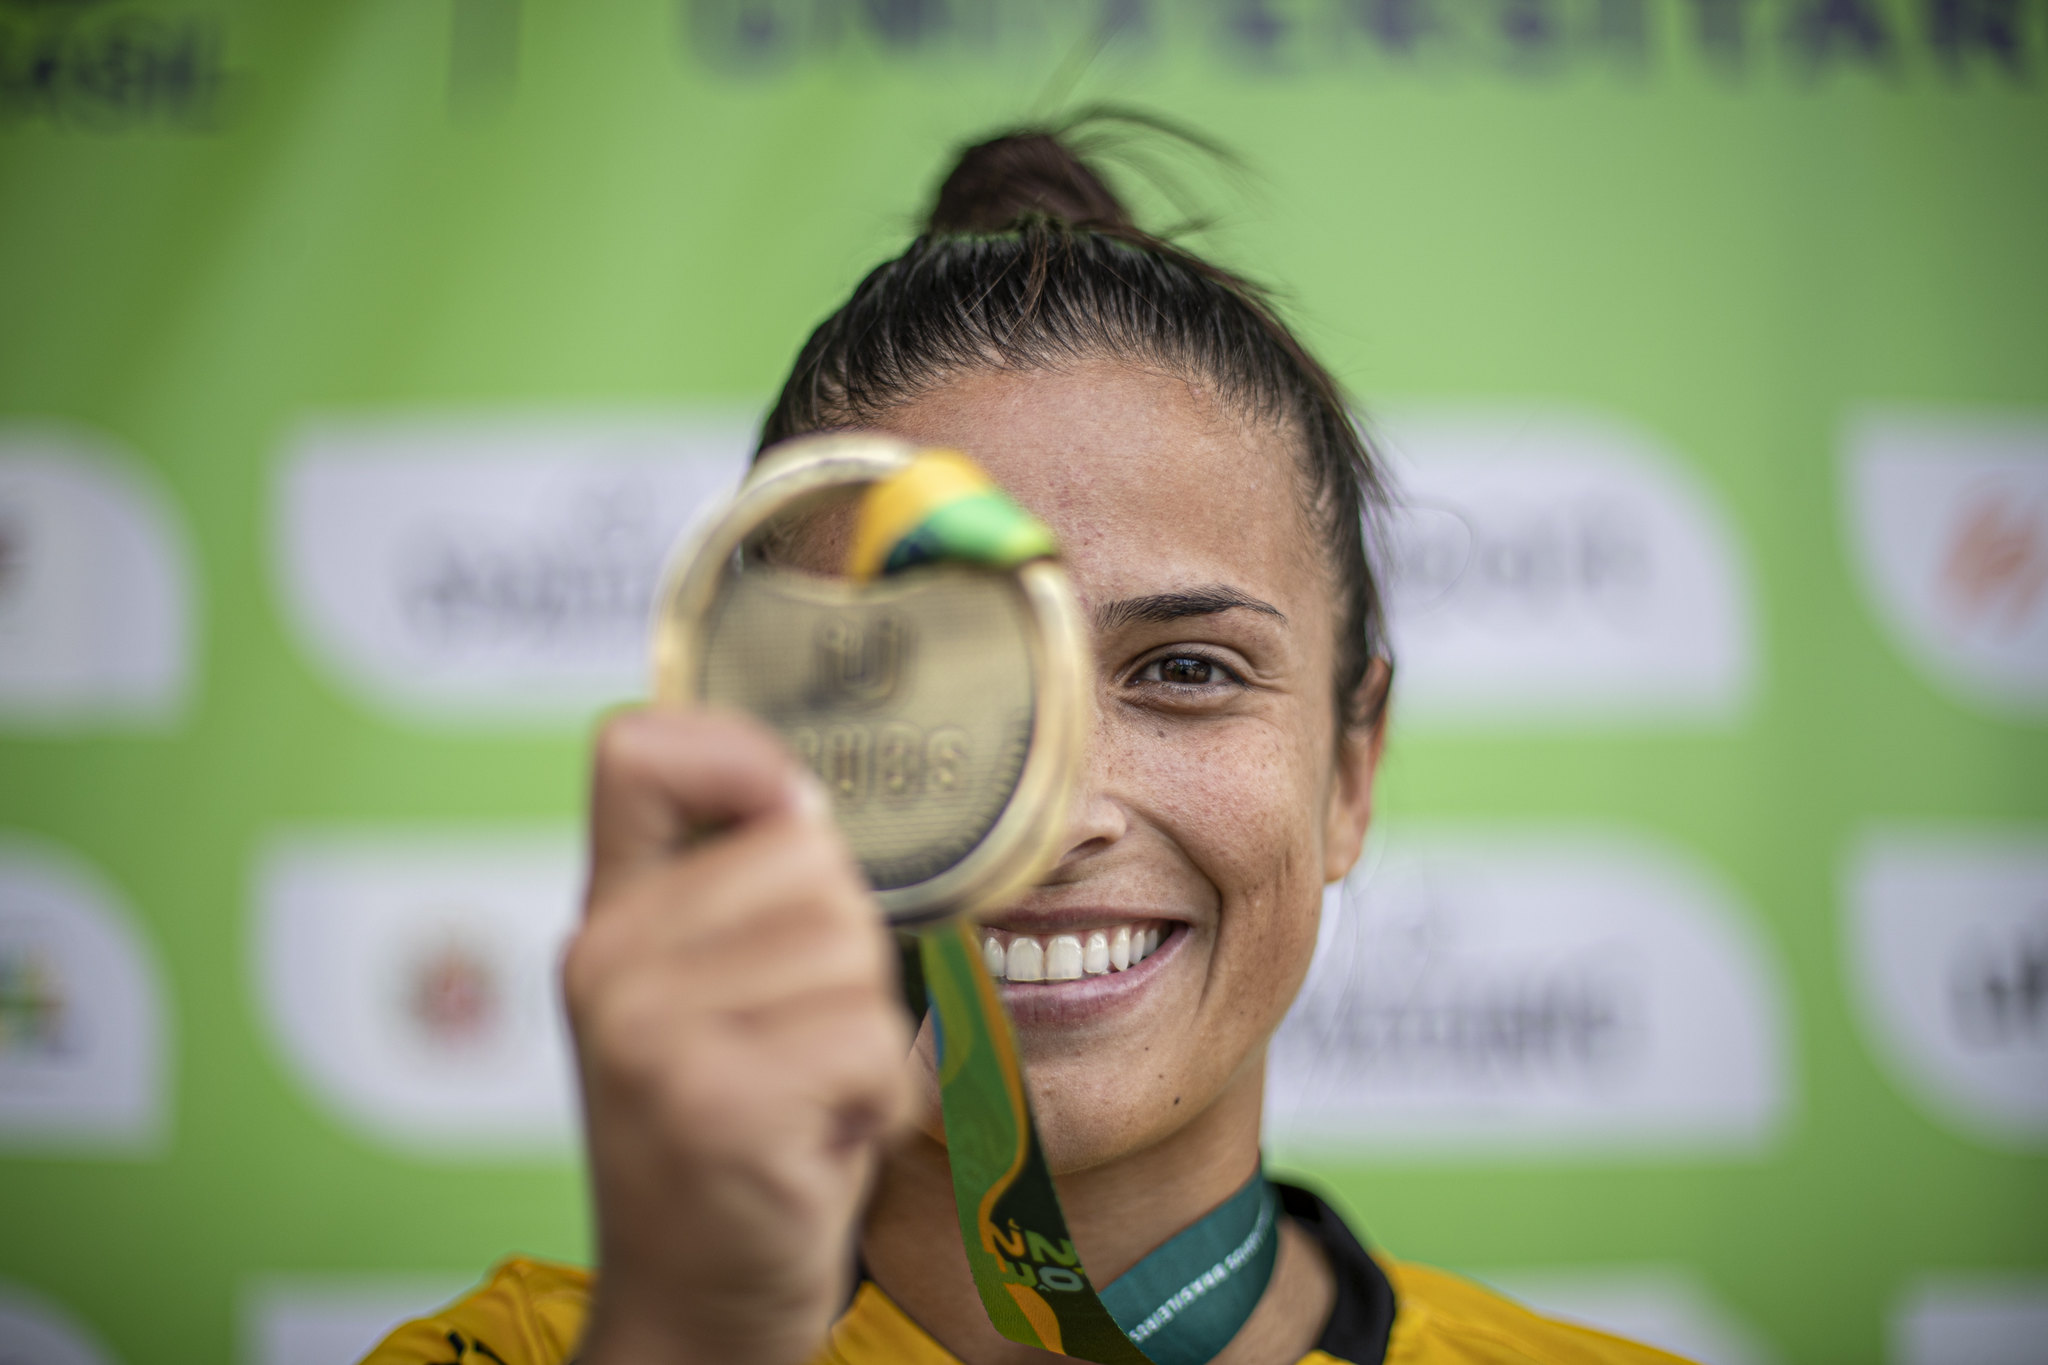 Futebol feminino: Criciúma enfrenta a UFS-SE hoje pelos Jogos  Universitários Brasileiros